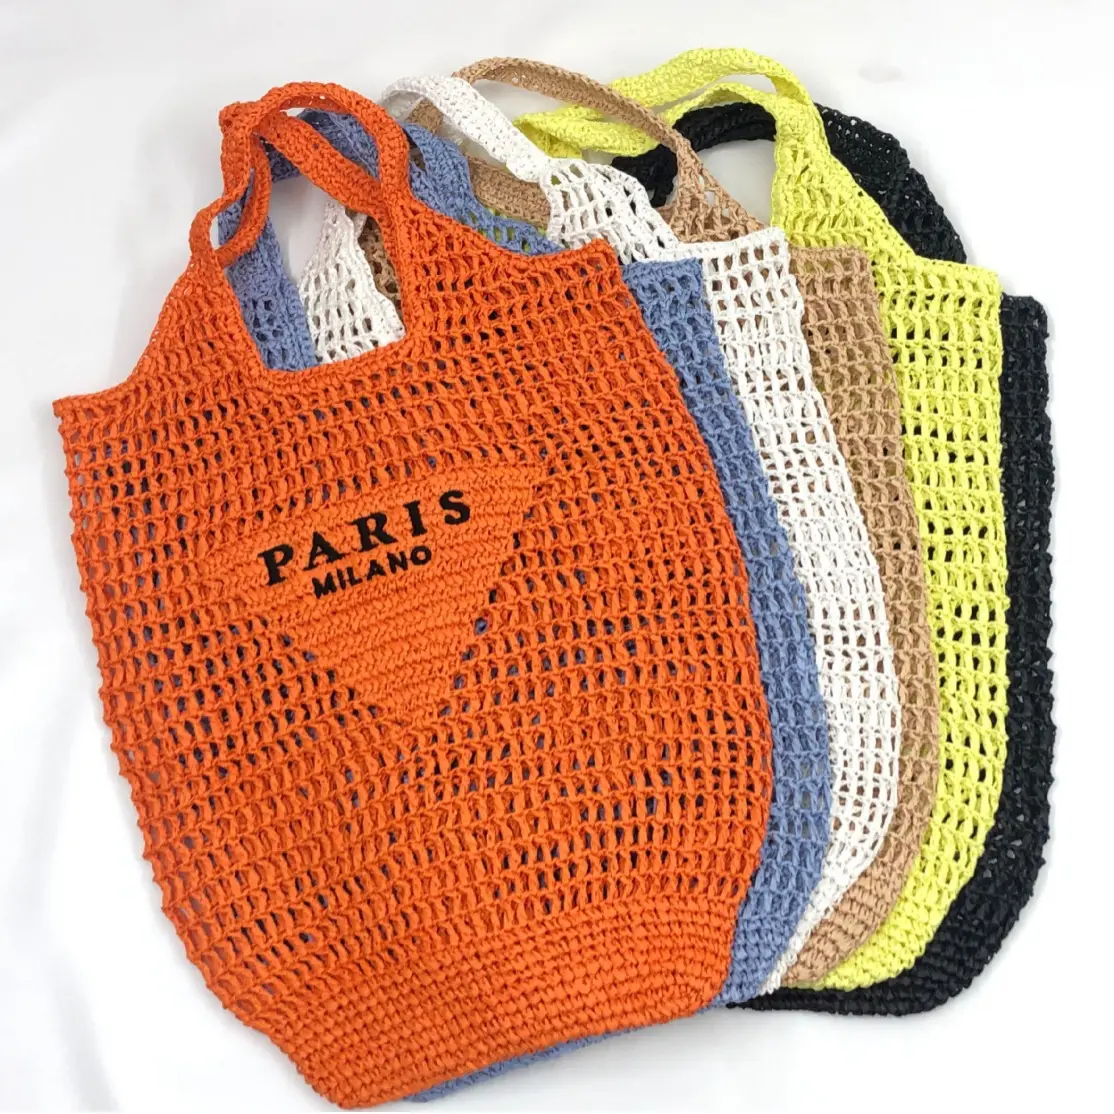 लक्ज़री कैटलॉग डिज़ाइनर रैफिया स्ट्रॉ बैग त्रिकोण सही लोगो के साथ समर बीच टोट बैग बुना पर्स शॉपिंग हैंडबैग